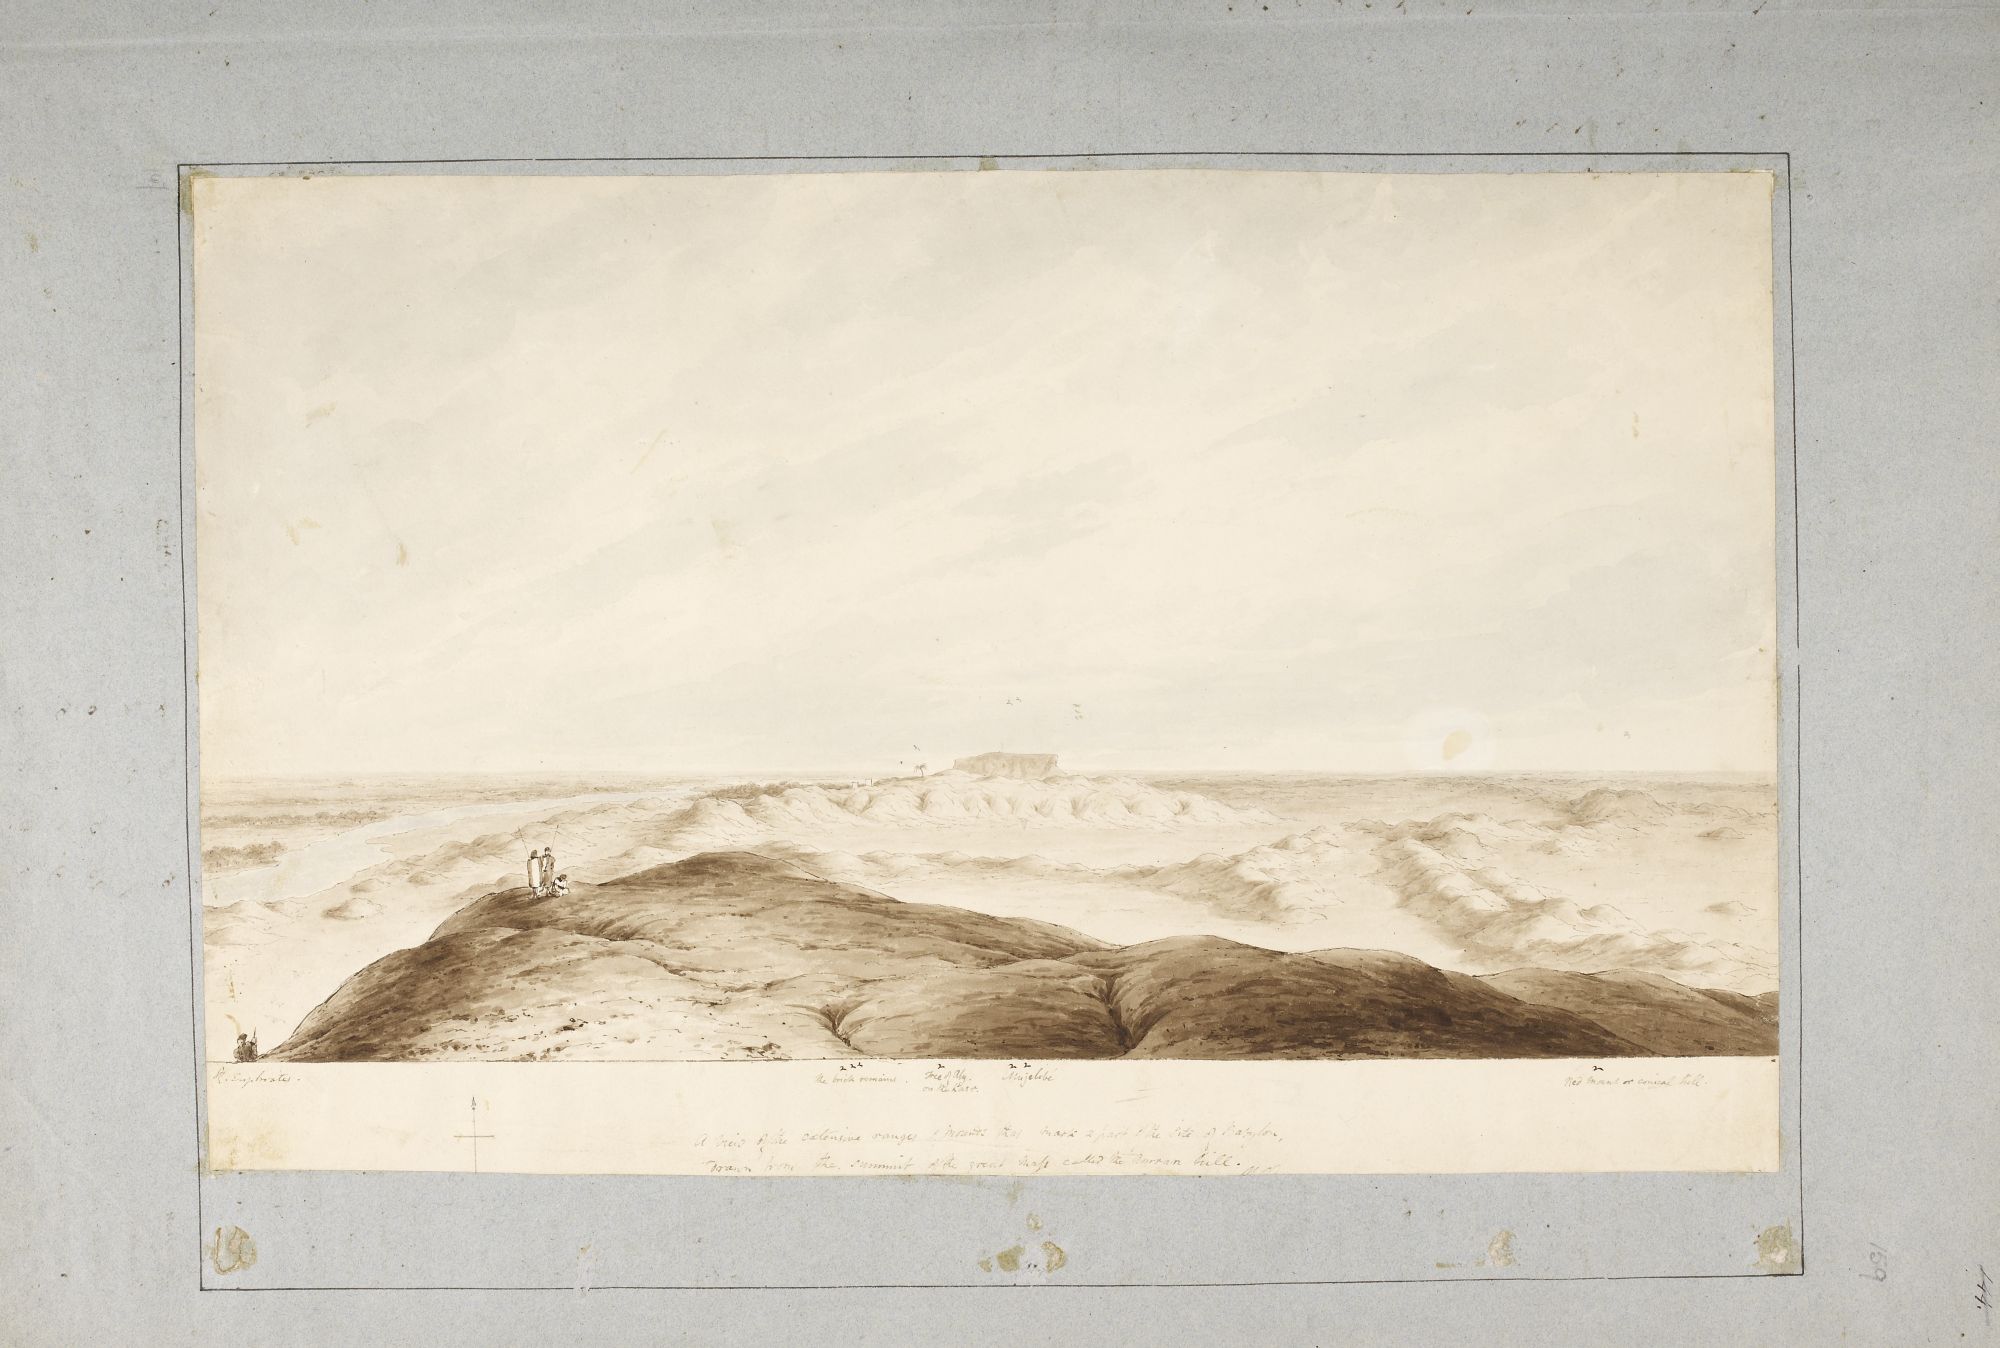 Panorama des ruines de Babylone. La célèbre ville est restée largement inconnue longtemps encore après la visite de Porter en 1818.